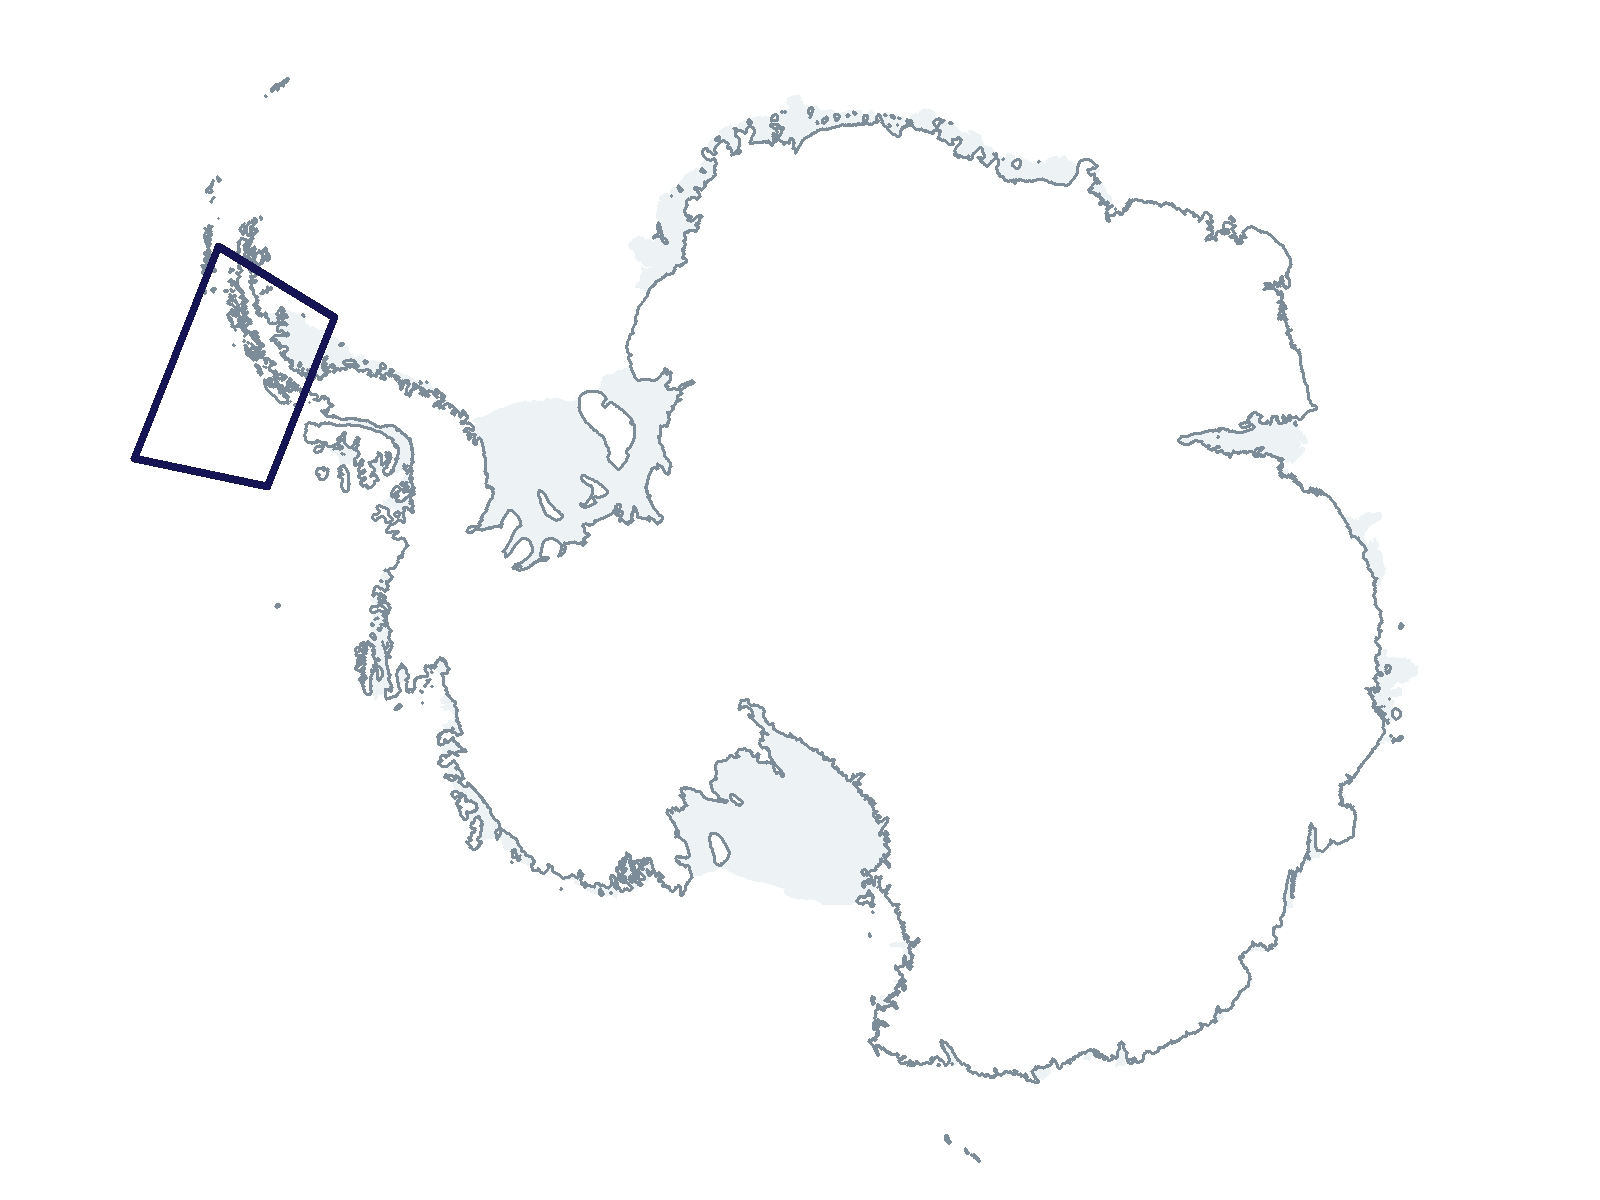 C-021-L Research Location(s): West Antarctic Peninsula